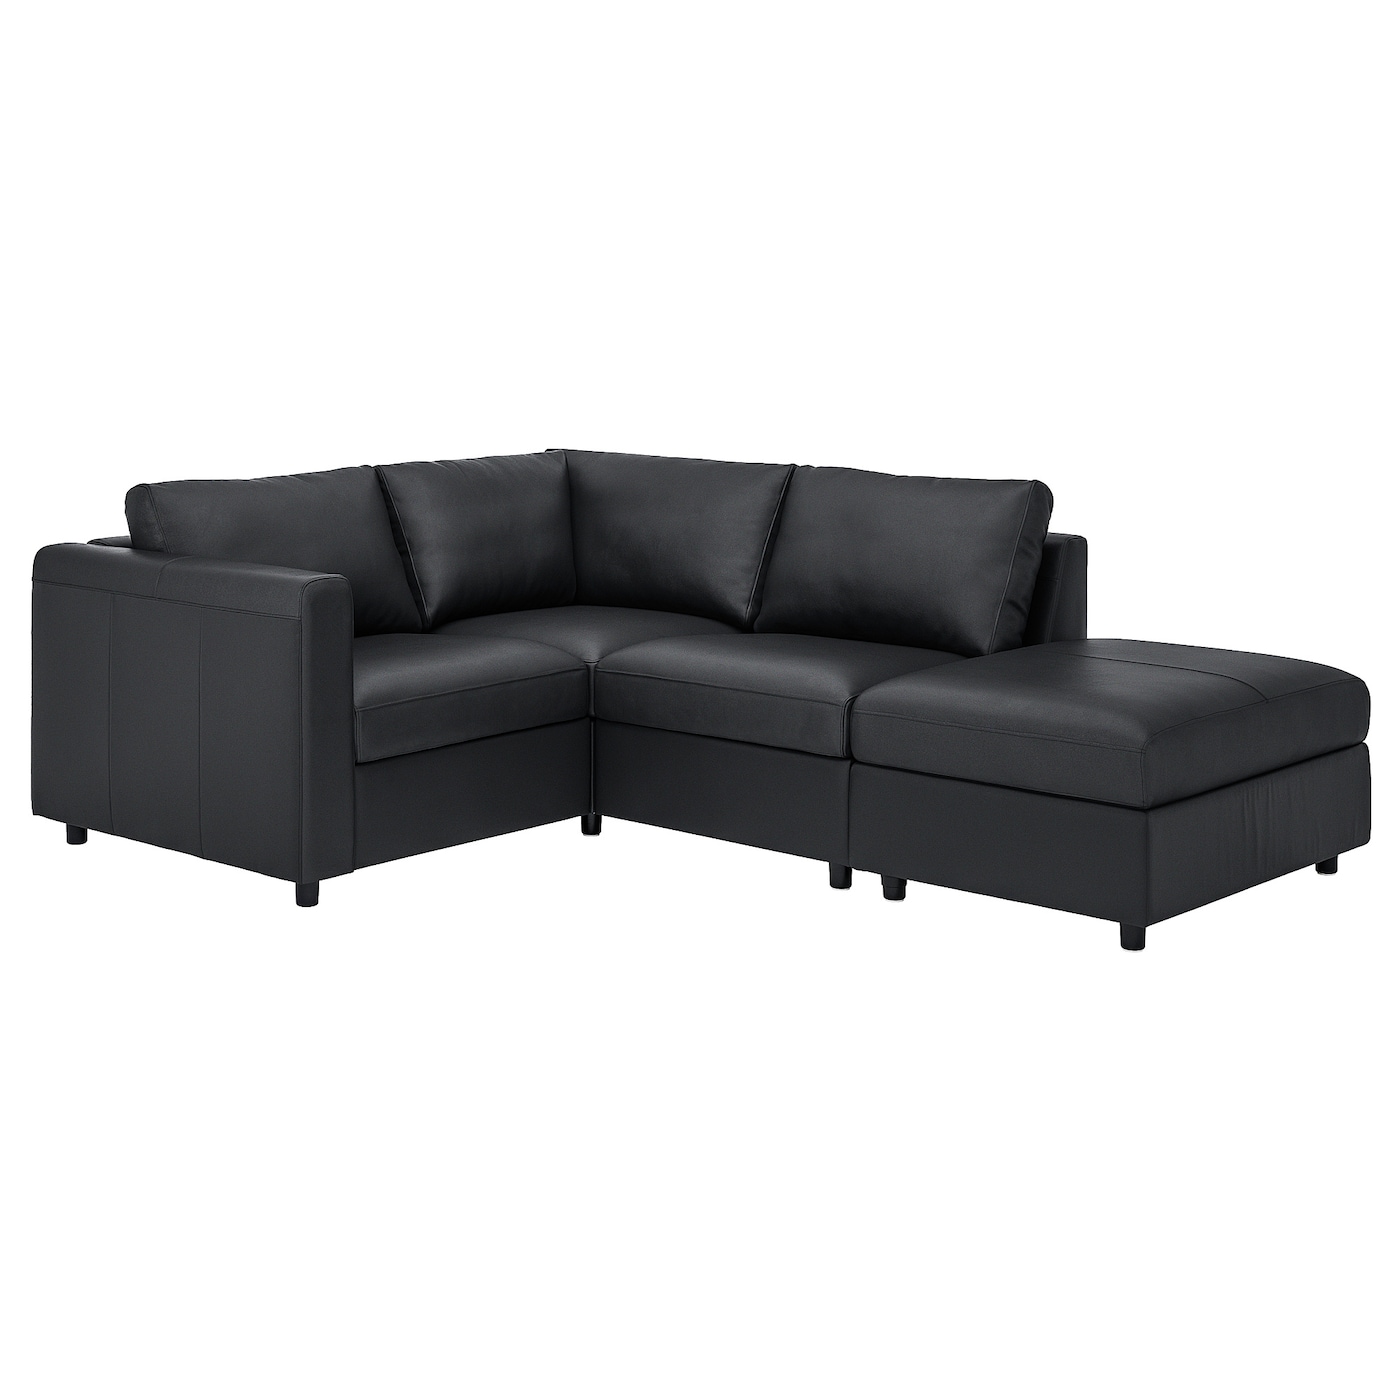 ВИМЛЕ 3-местный угловой диван,откидной/Гранн/Бомстад черный VIMLE IKEA